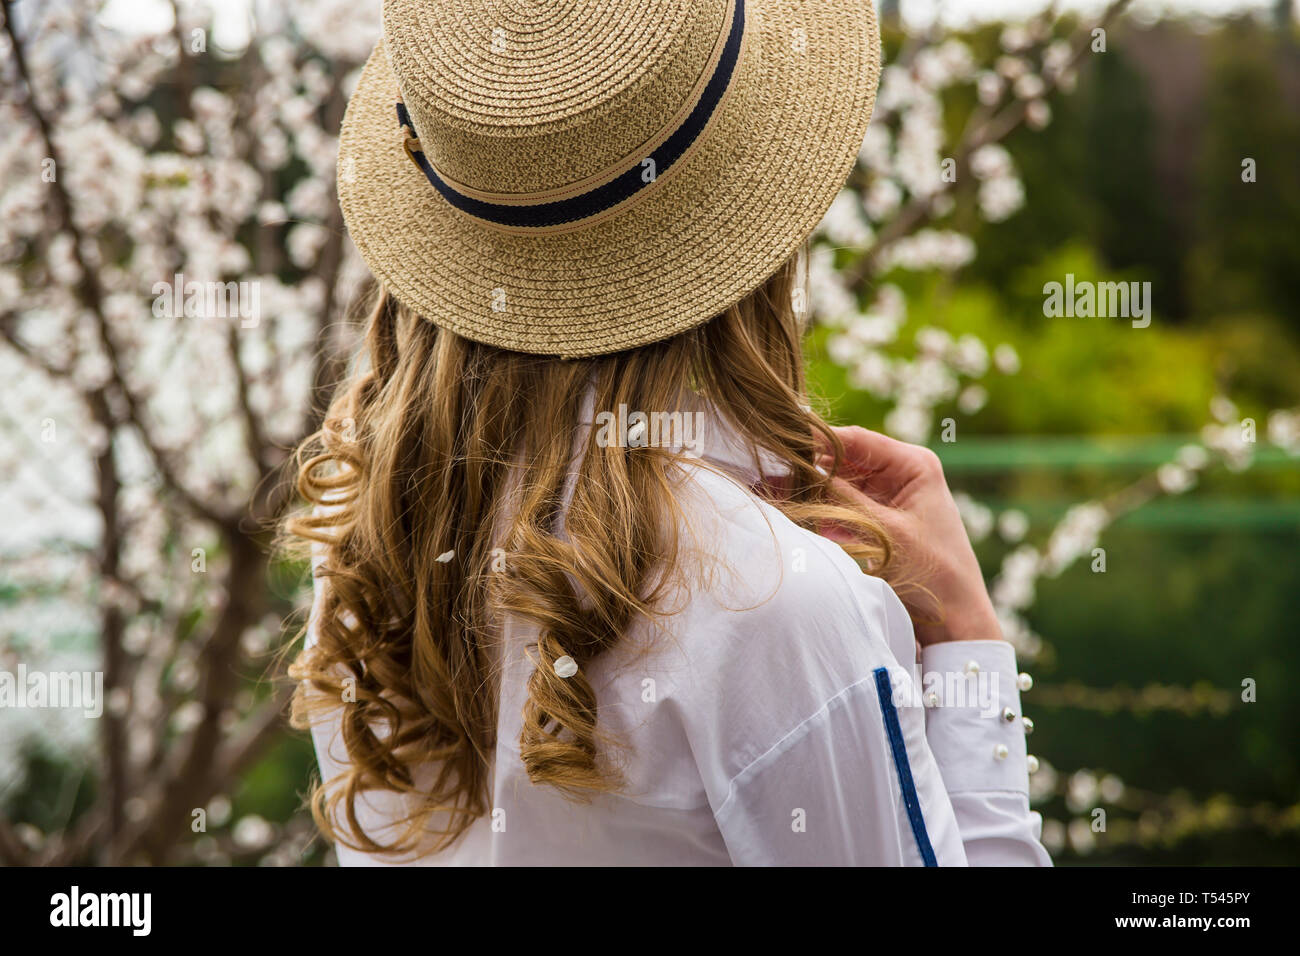 Eine junge schöne Kaukasische Mädchen in einem canote Hut steht mit dem Rücken unter den weiß blühenden Bäumen. Frühling Stockfoto